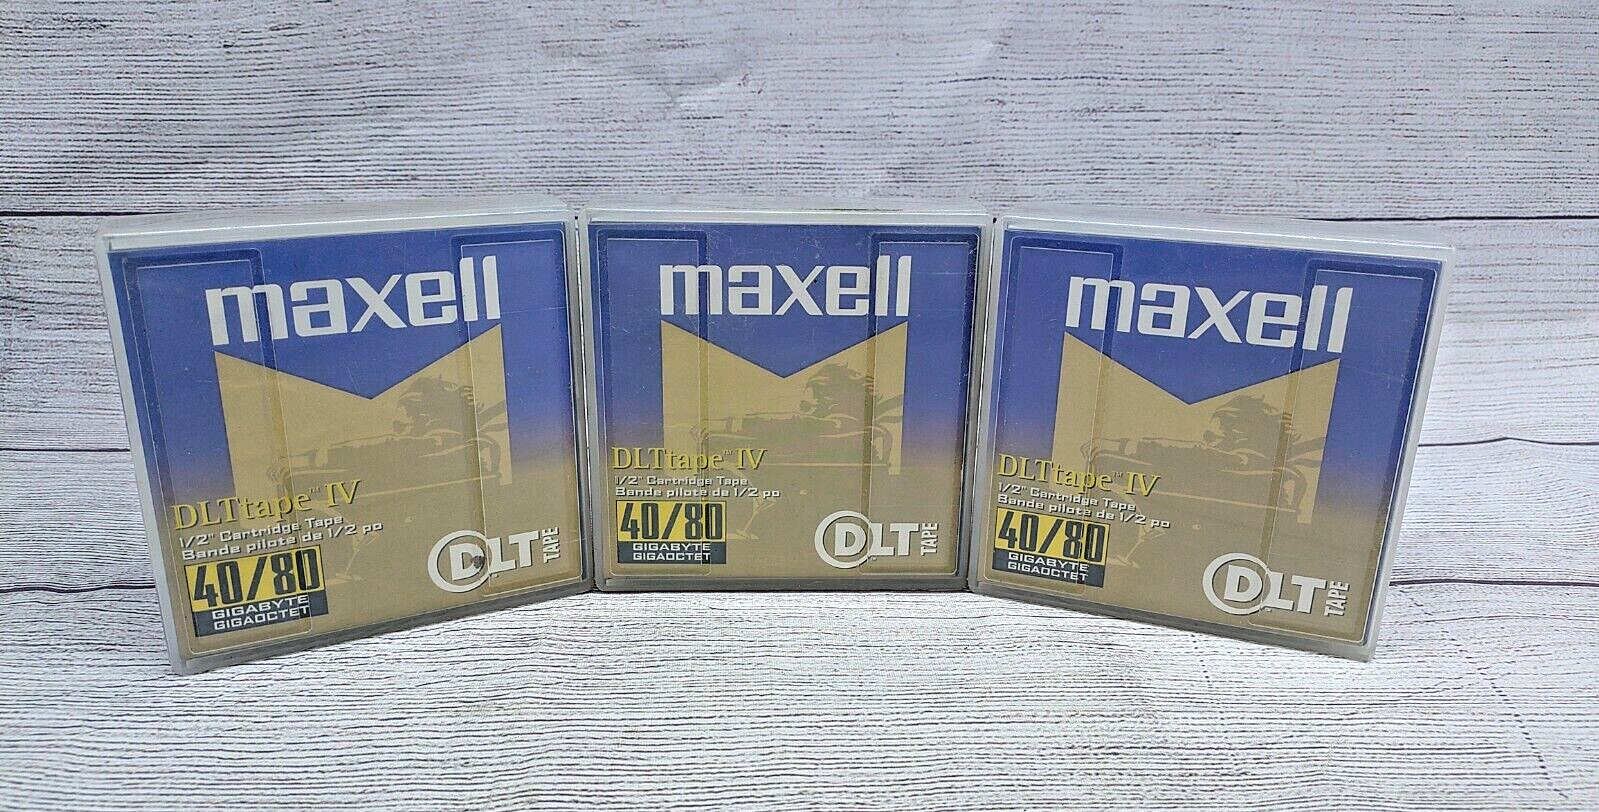 Maxell DLT-IV 40/80 DLT Tapes 1/2